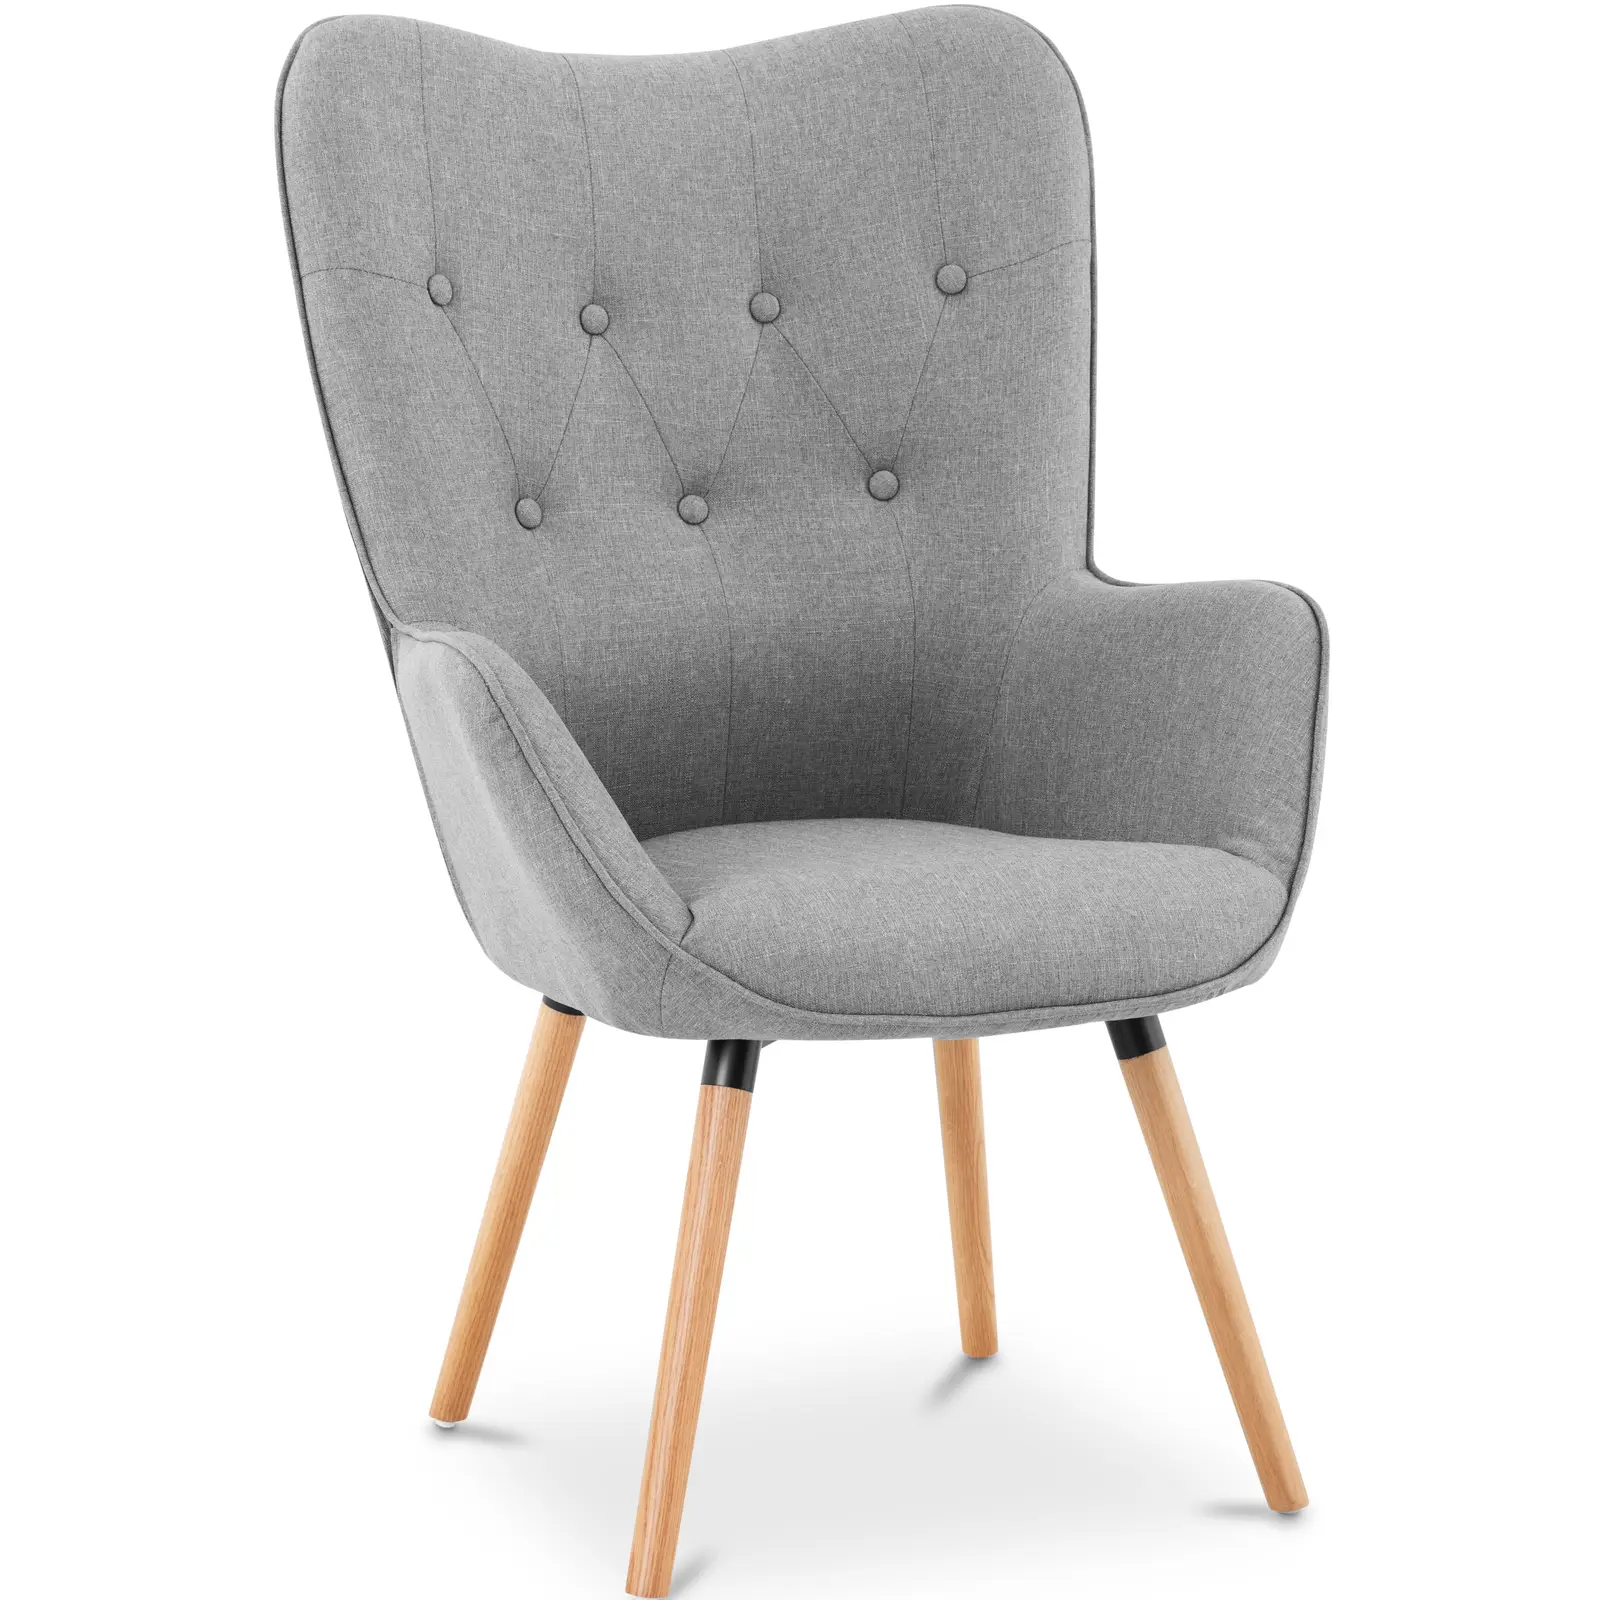 Čalouněná židle do 160 kg sedací plocha 43 x 49 cm šedá - Čalouněné židle Fromm & Starck